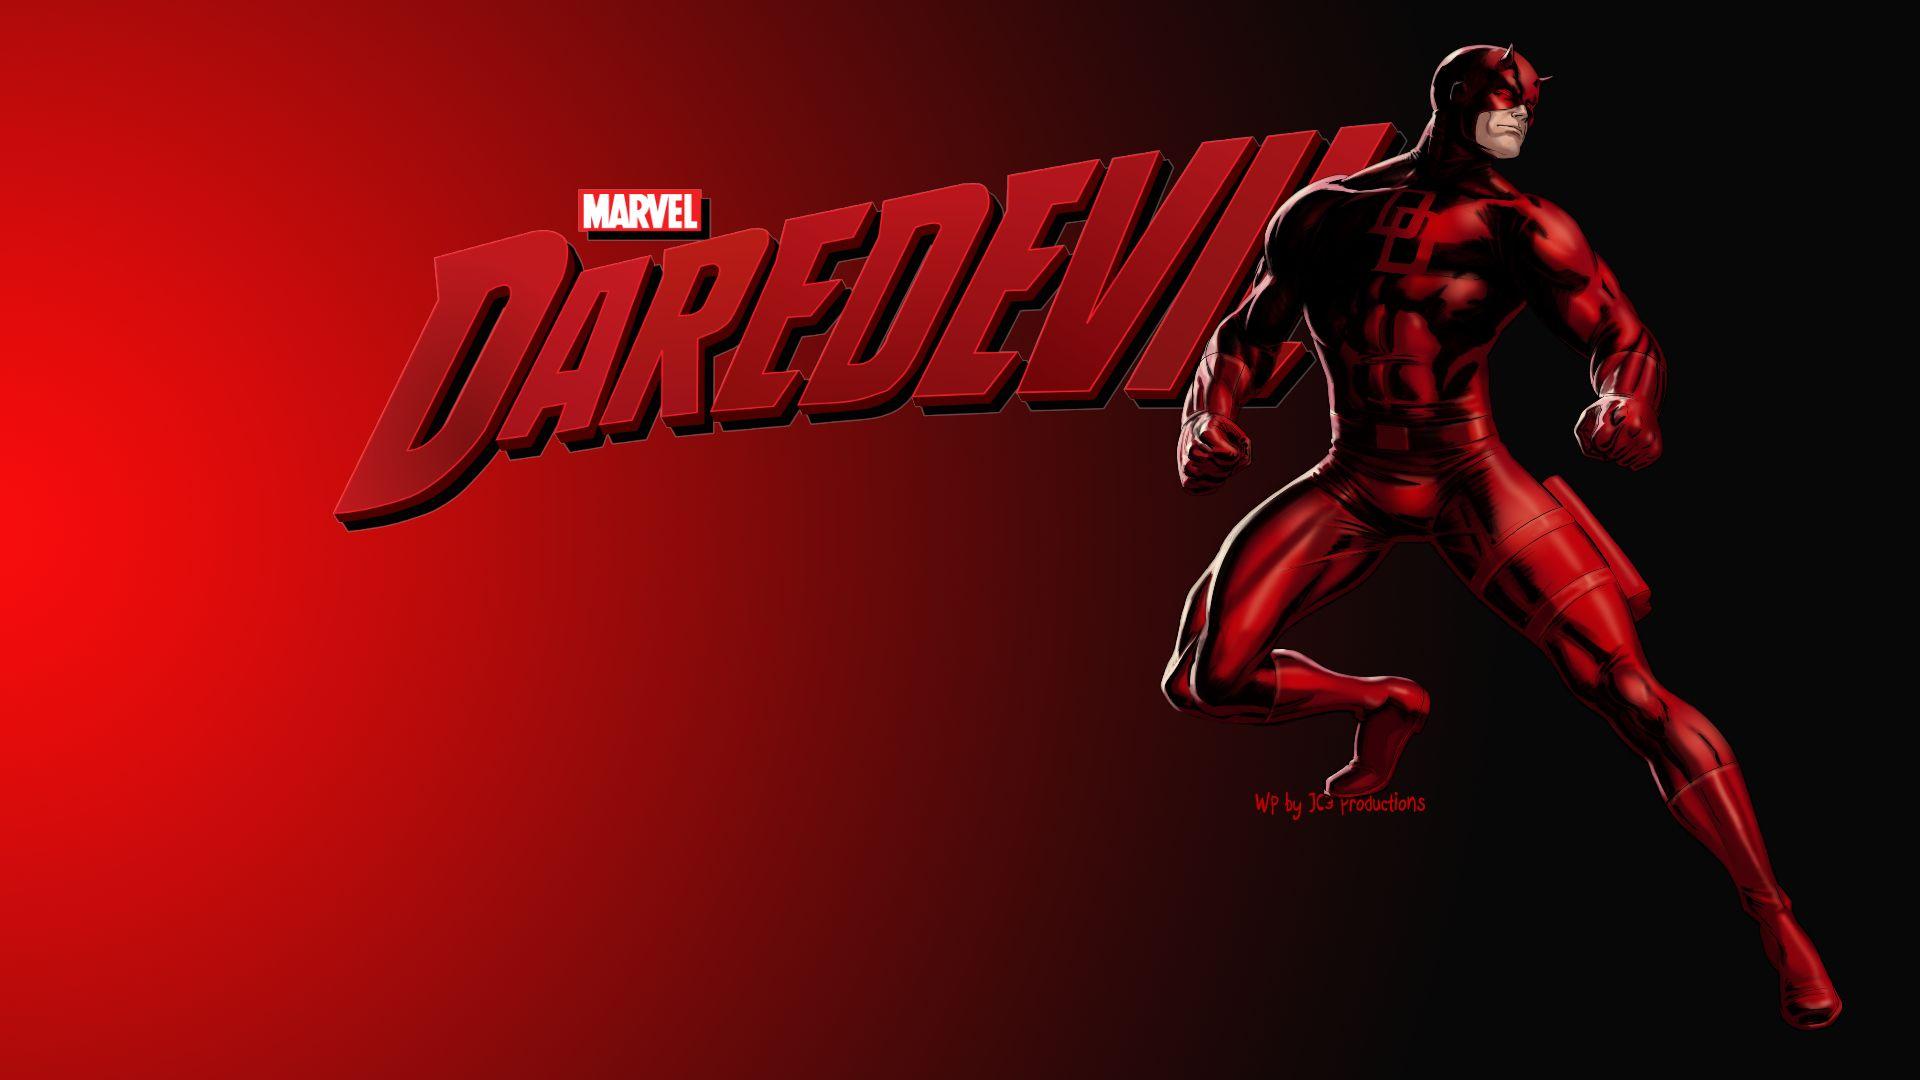 Daredevil image Daredevil 2 HD wallpaper and background photo